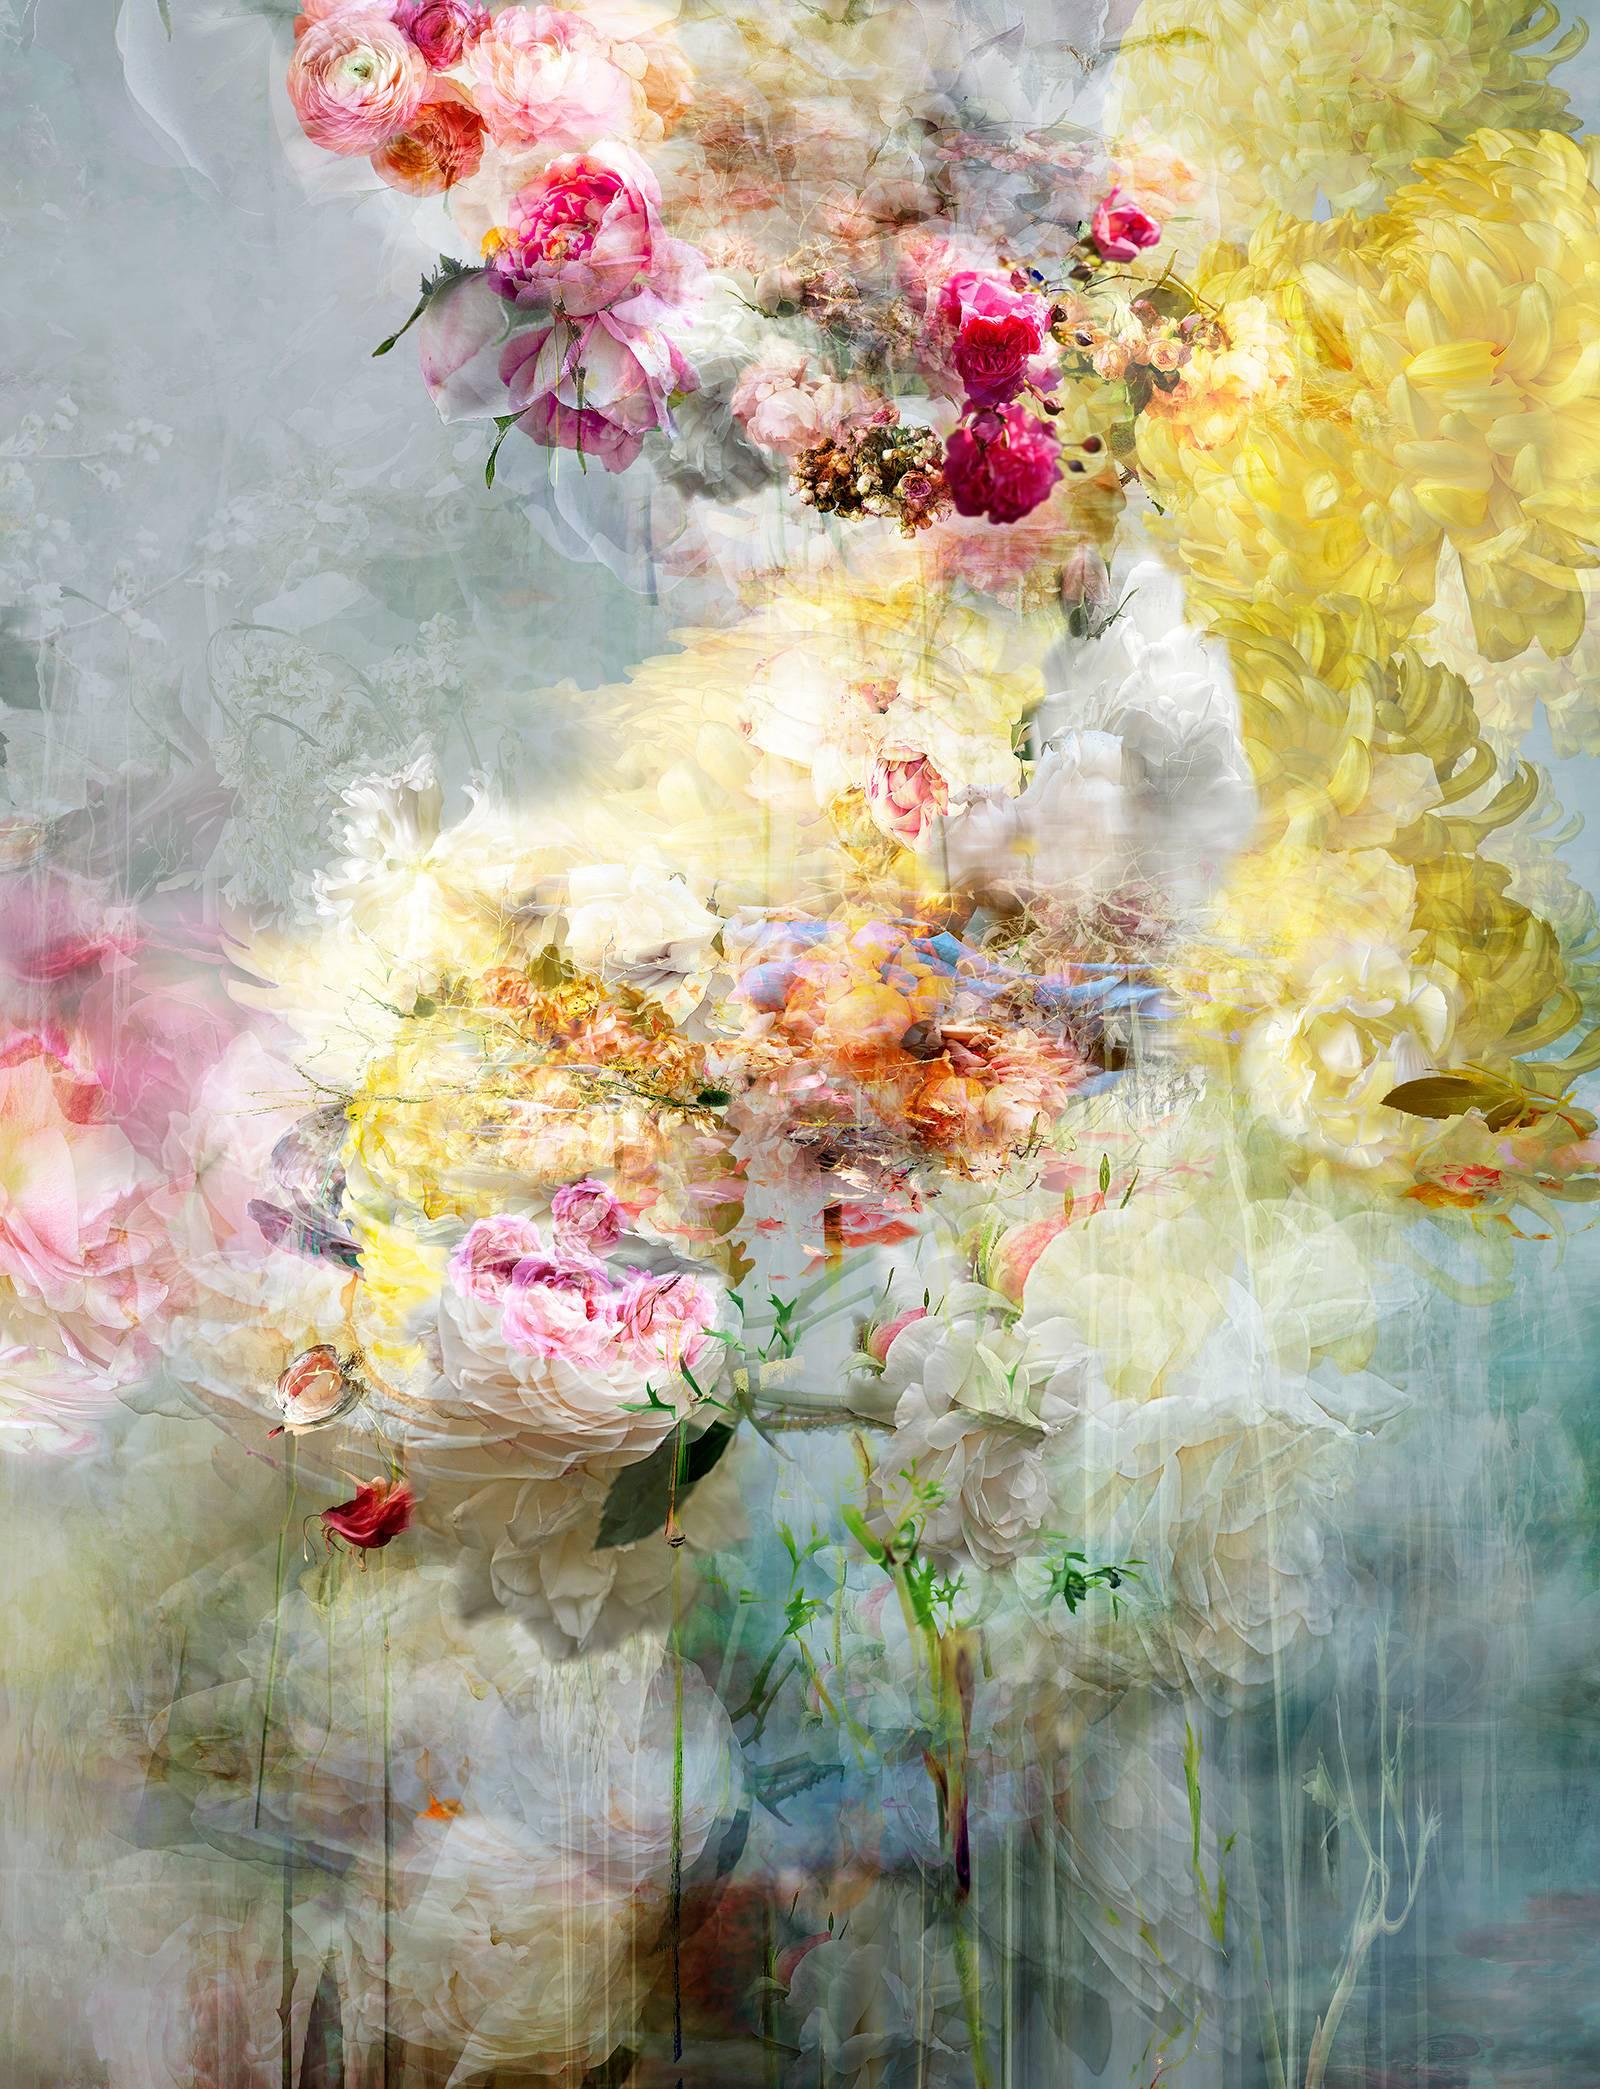 Songs For Dead Heroes n° 9 - montage de photos de paysages floraux abstraits aux couleurs pastel